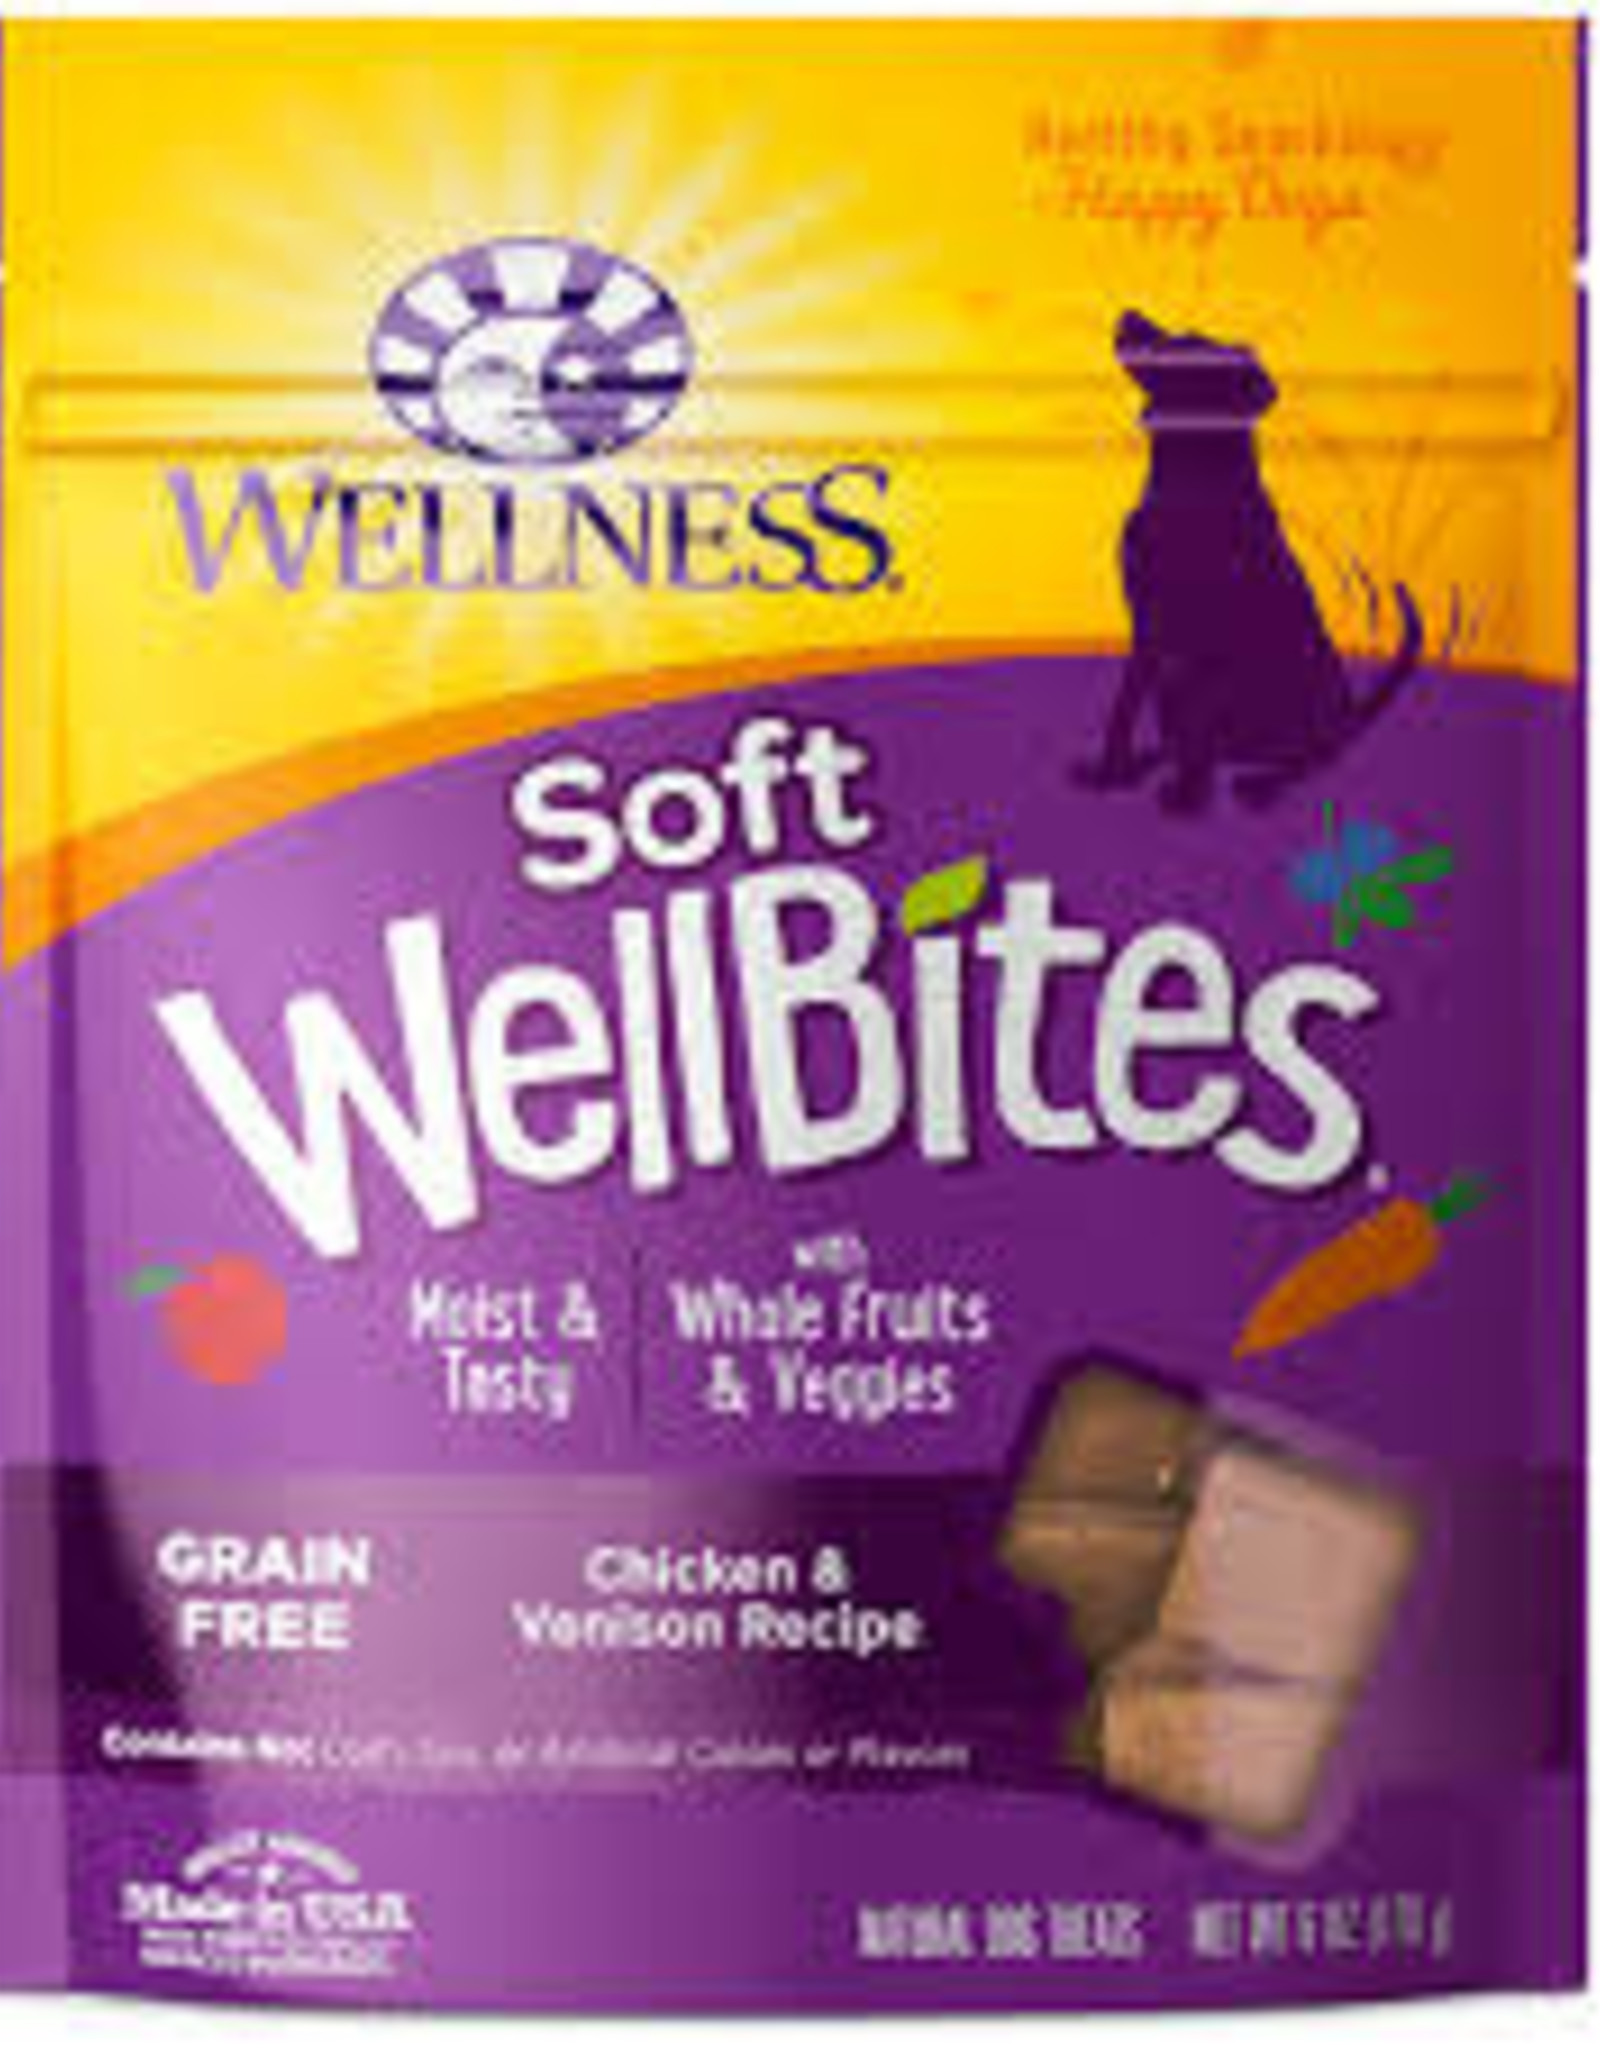 Wellness Wellness WellBites - 6 oz - Chicken & Venison